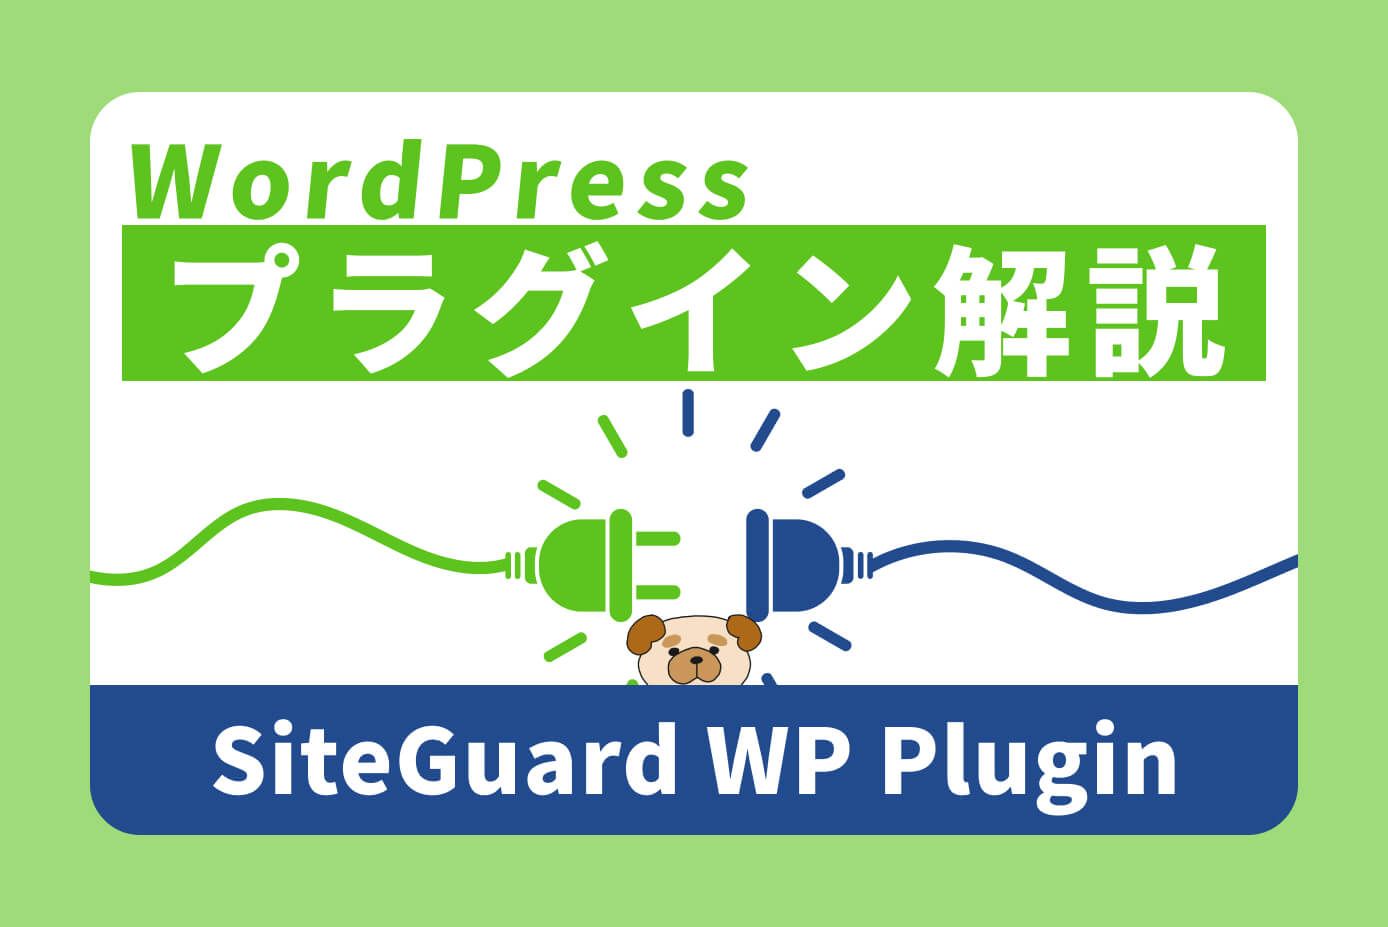 【画像で解説】SiteGuard WP Pluginの設定方法と使い方【WordPressセキュリティ対策プラグイン】